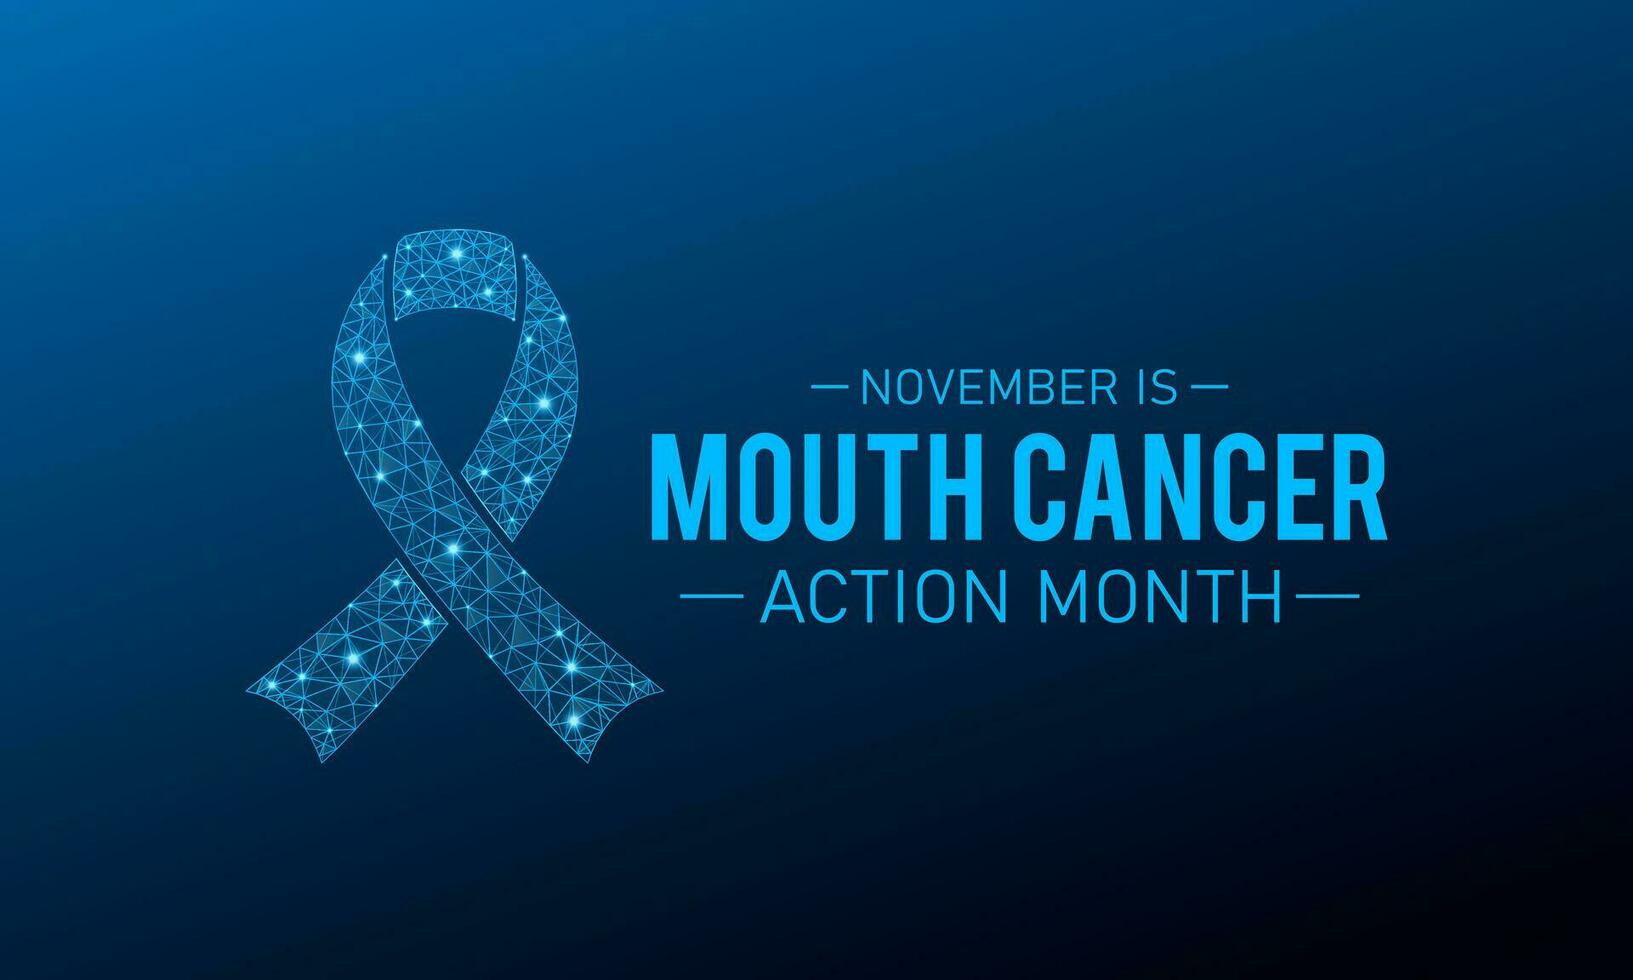 mond kanker actie maand is opgemerkt elke jaar in november. november is mond kanker actie maand. vector sjabloon voor banier, groet kaart, poster met achtergrond. vector illustratie.